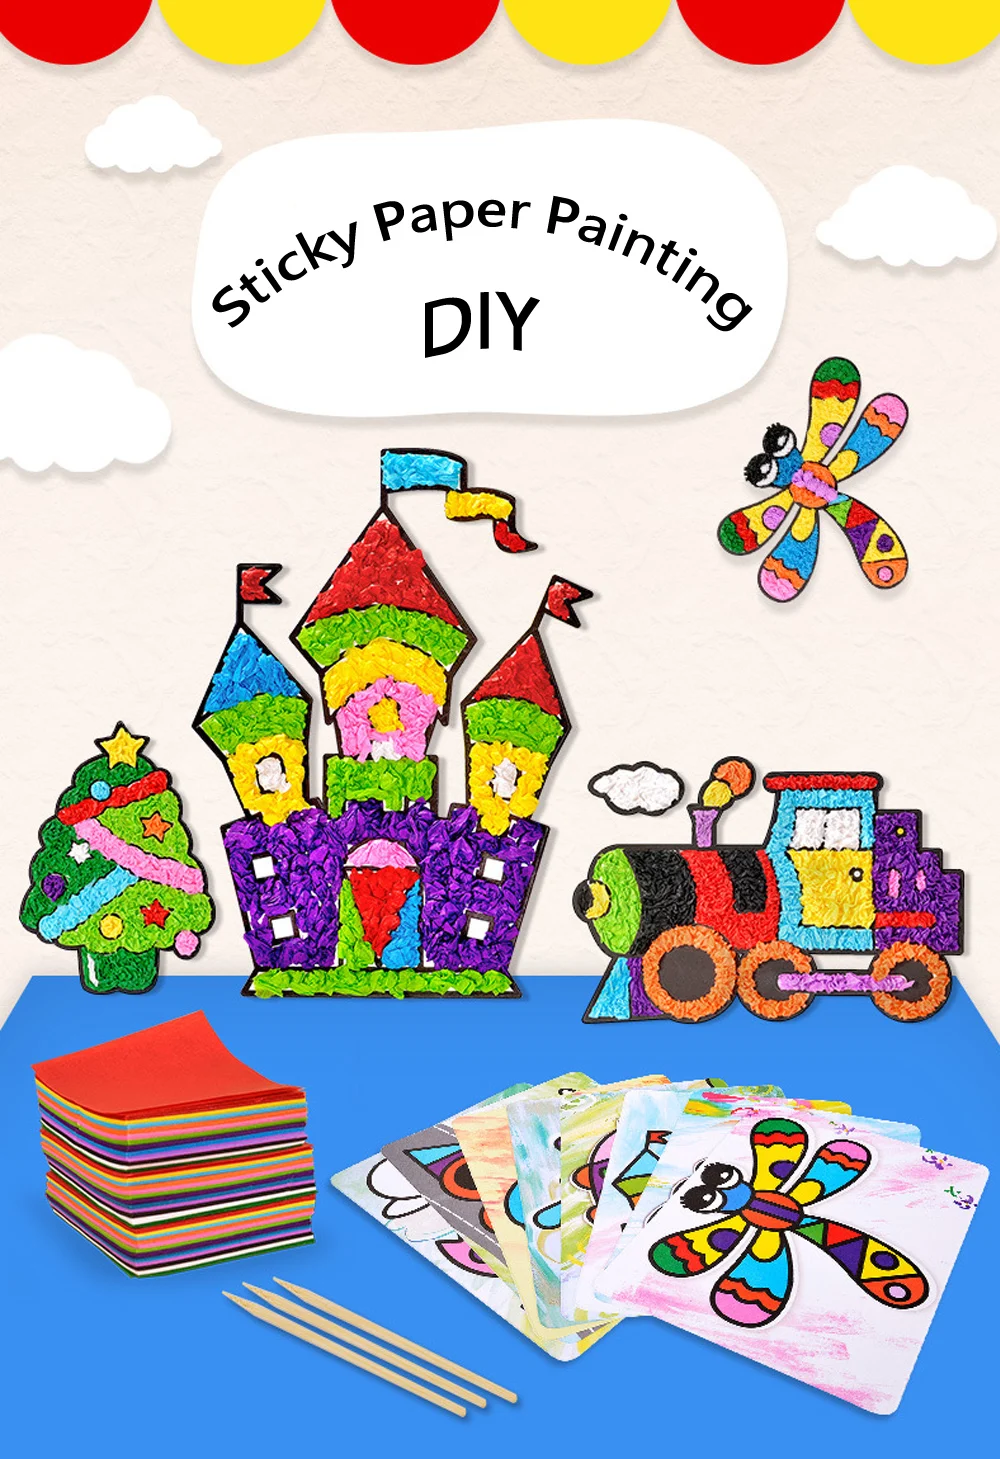 3D DIY Sticky Бумага Живопись игрушечные лошадки дети ручной работы рисование и воображение Training Kit книги по искусству игрушки для подарки д